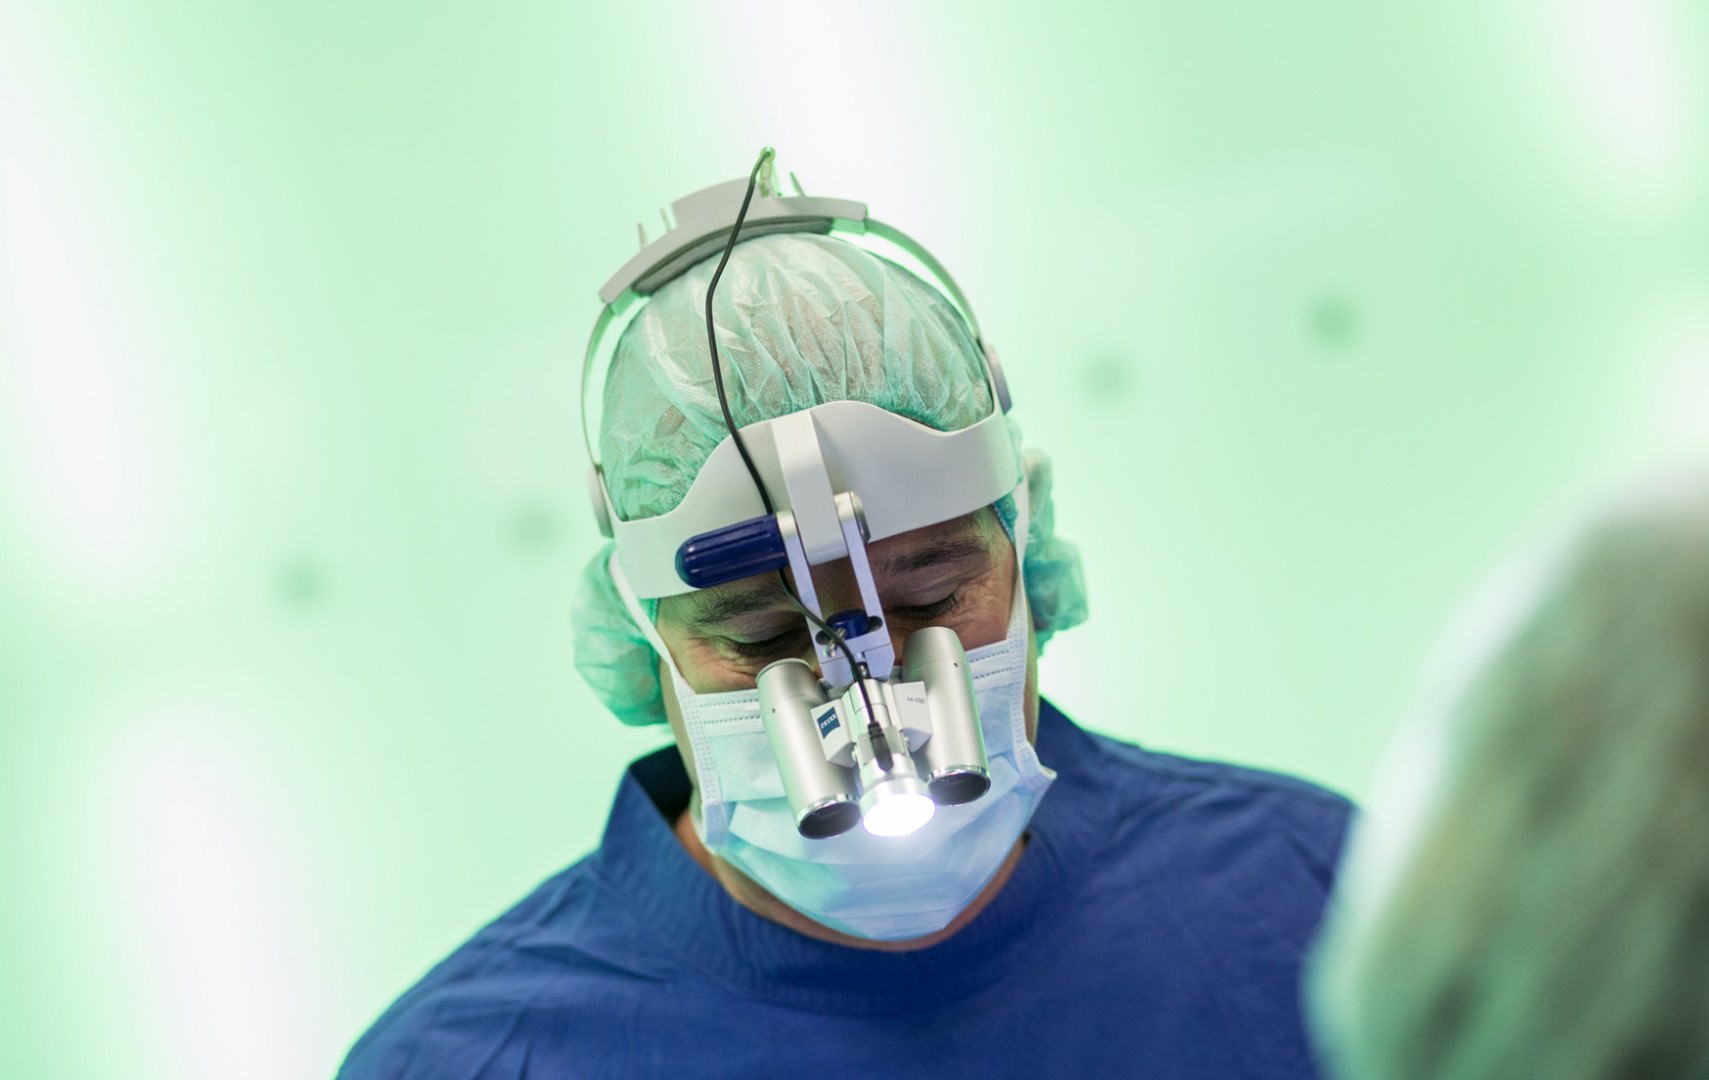 Mikrochirurgie Köln: Zahnkultur) ist der führende Zahnarzt für innovative Kieferchirurgie und Oralchirurgie